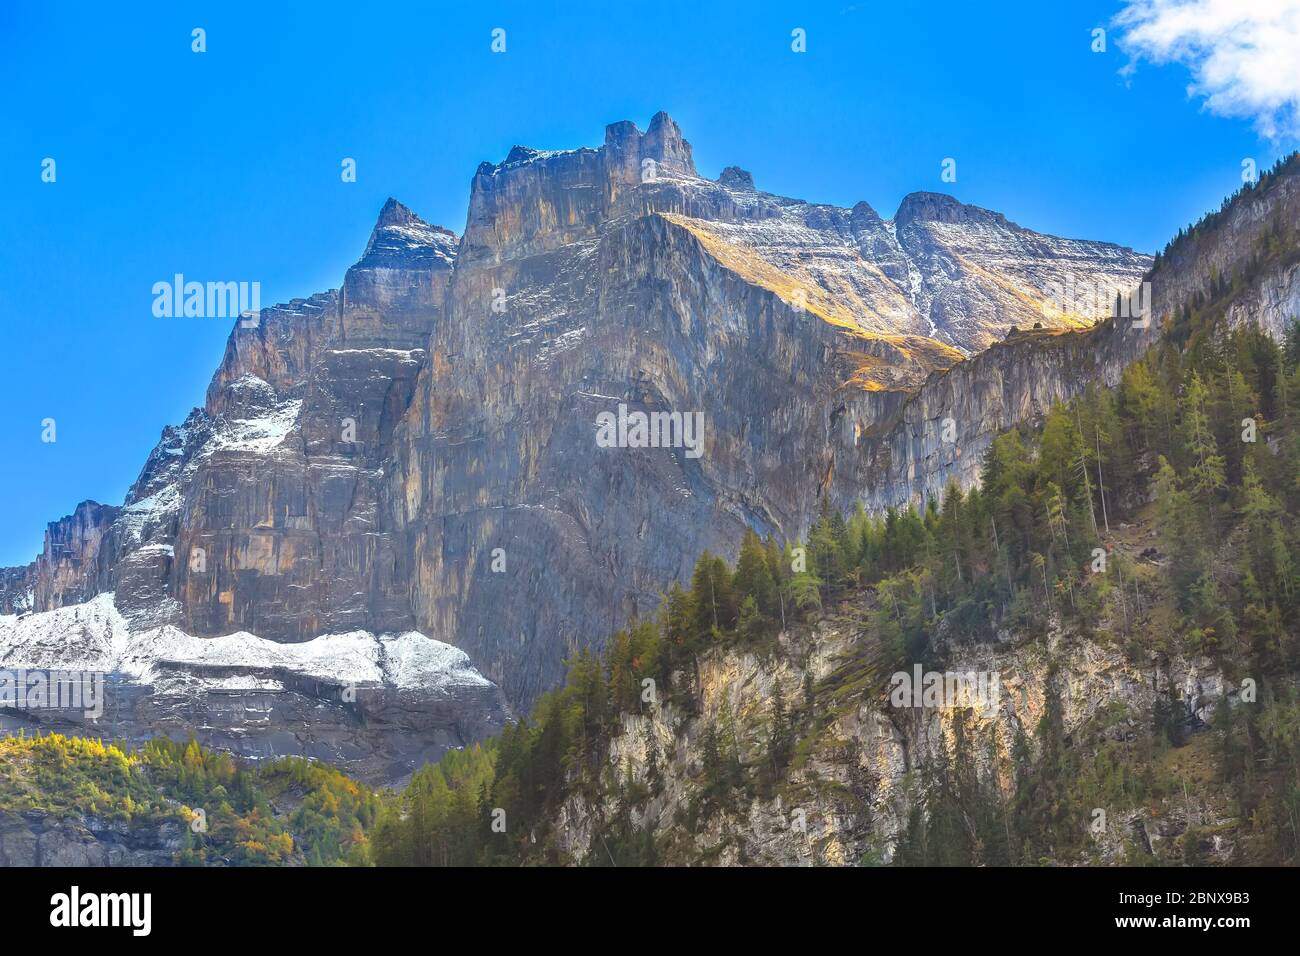 Suisse, vue panoramique sur les sommets rocheux des Alpes suisses, Jungfraujoch, station de ski, Oberland bernois Banque D'Images